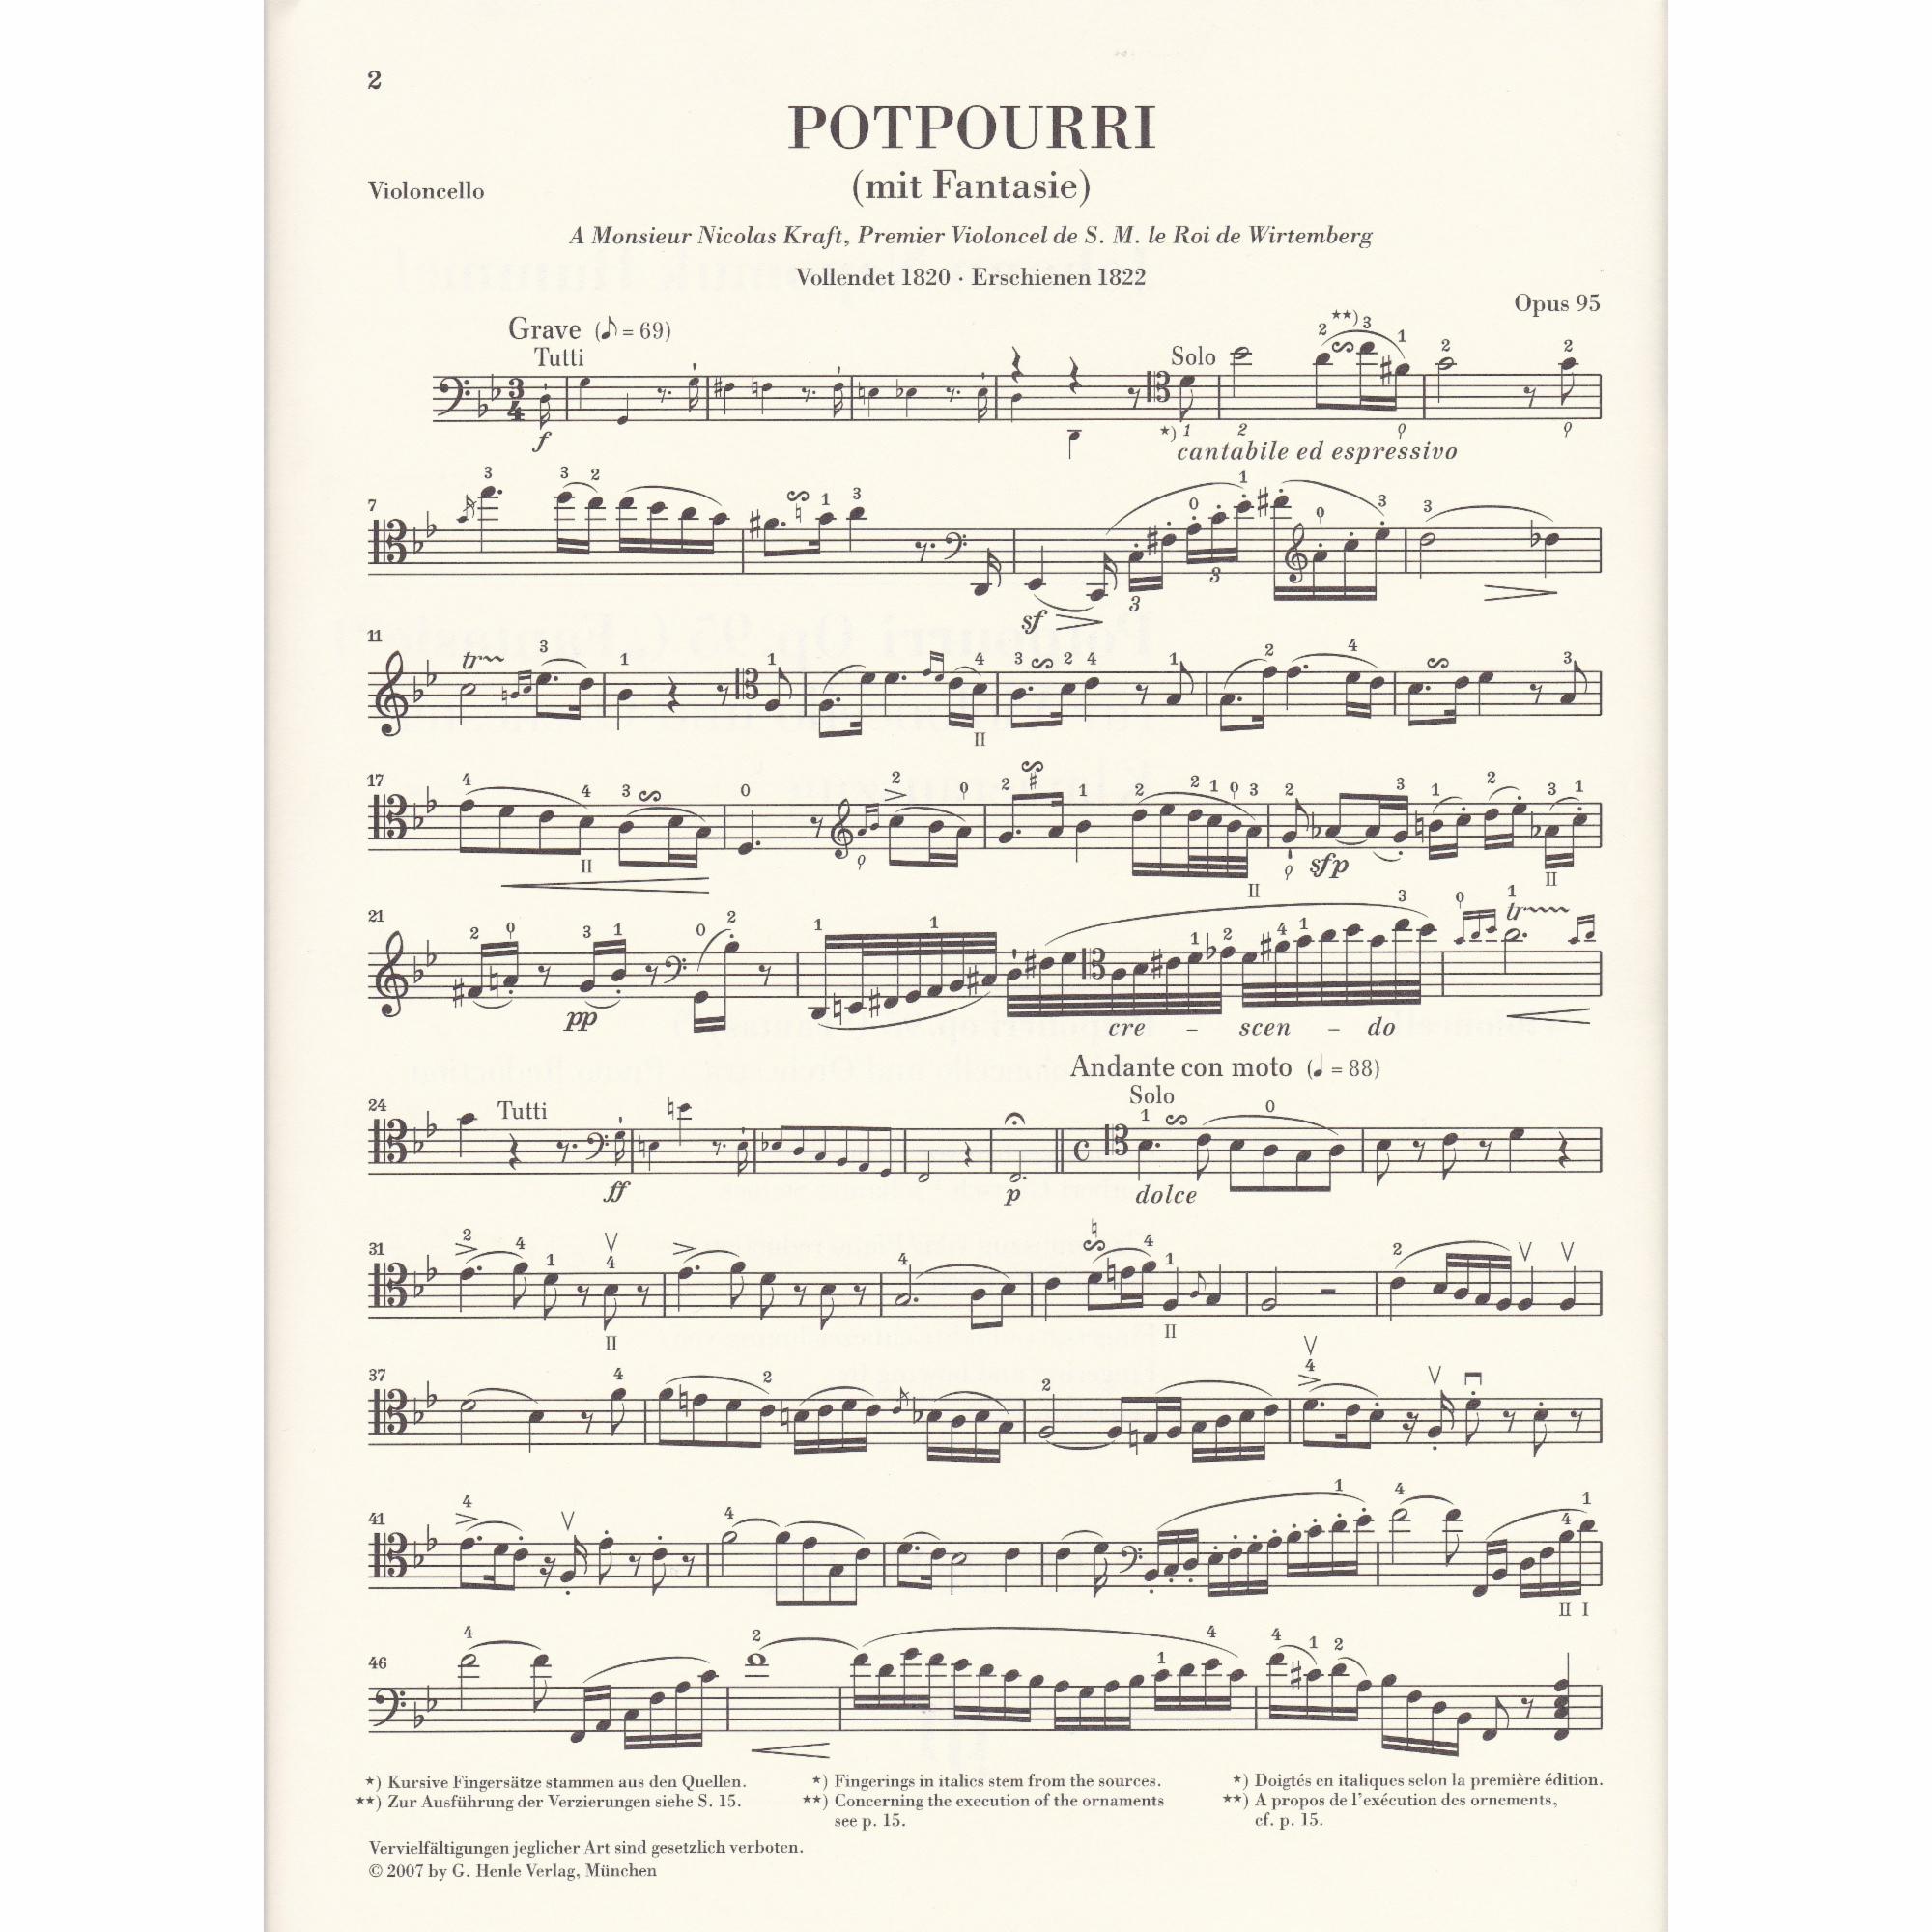 Potpourri for Cello and Piano, Op. 95